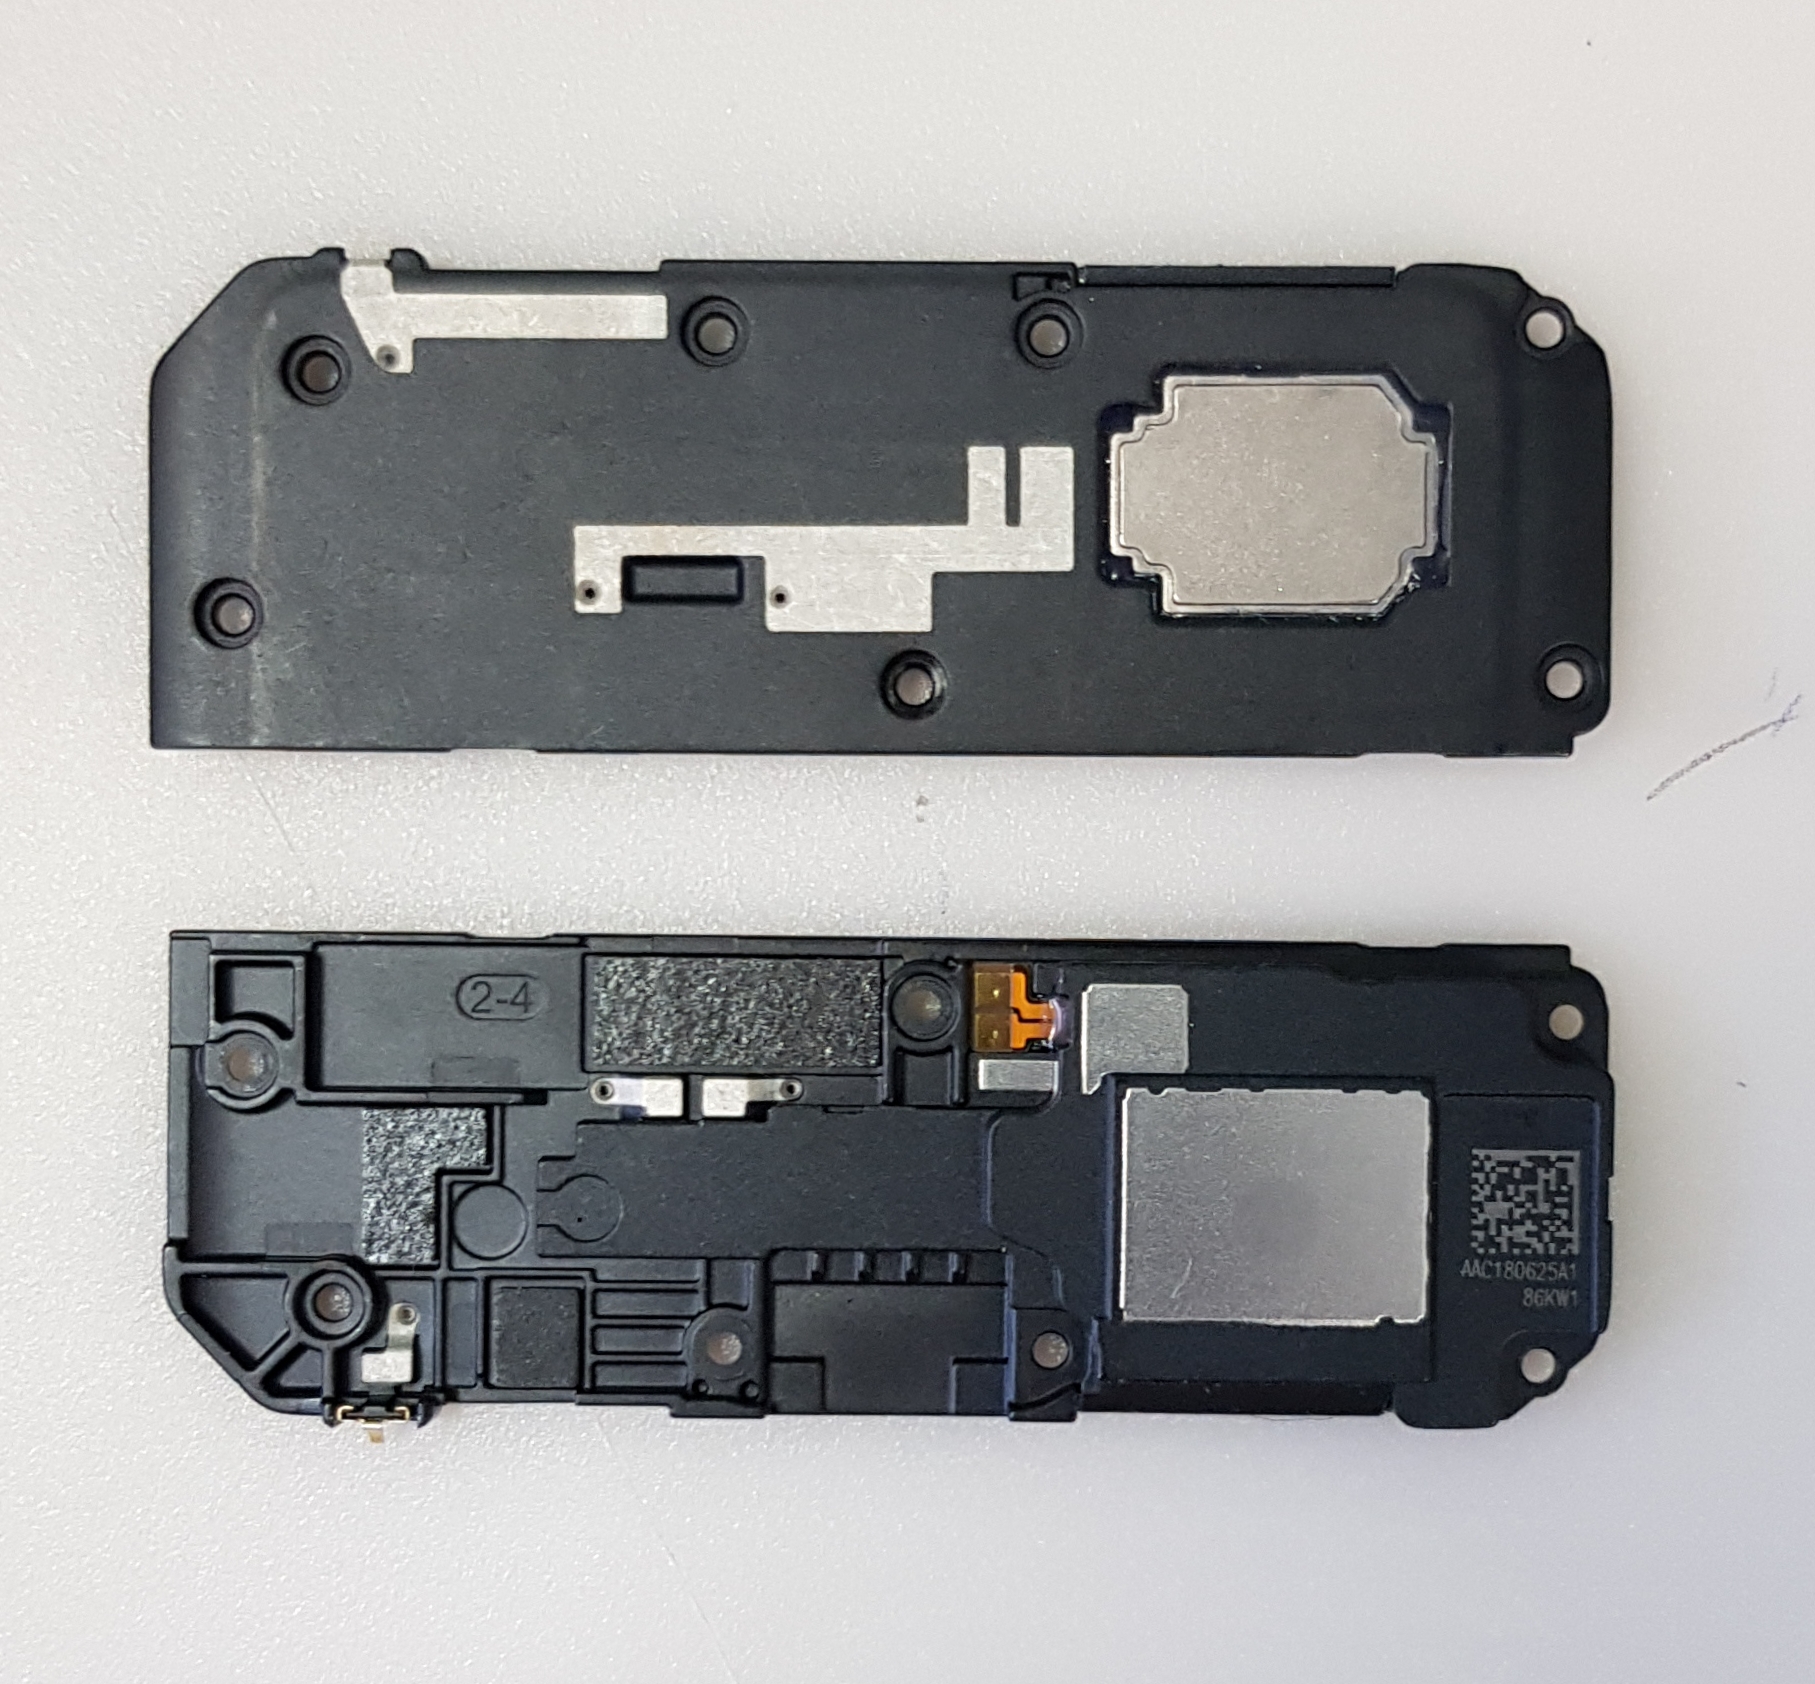 Xiaomi Mi 8 M1803e1a